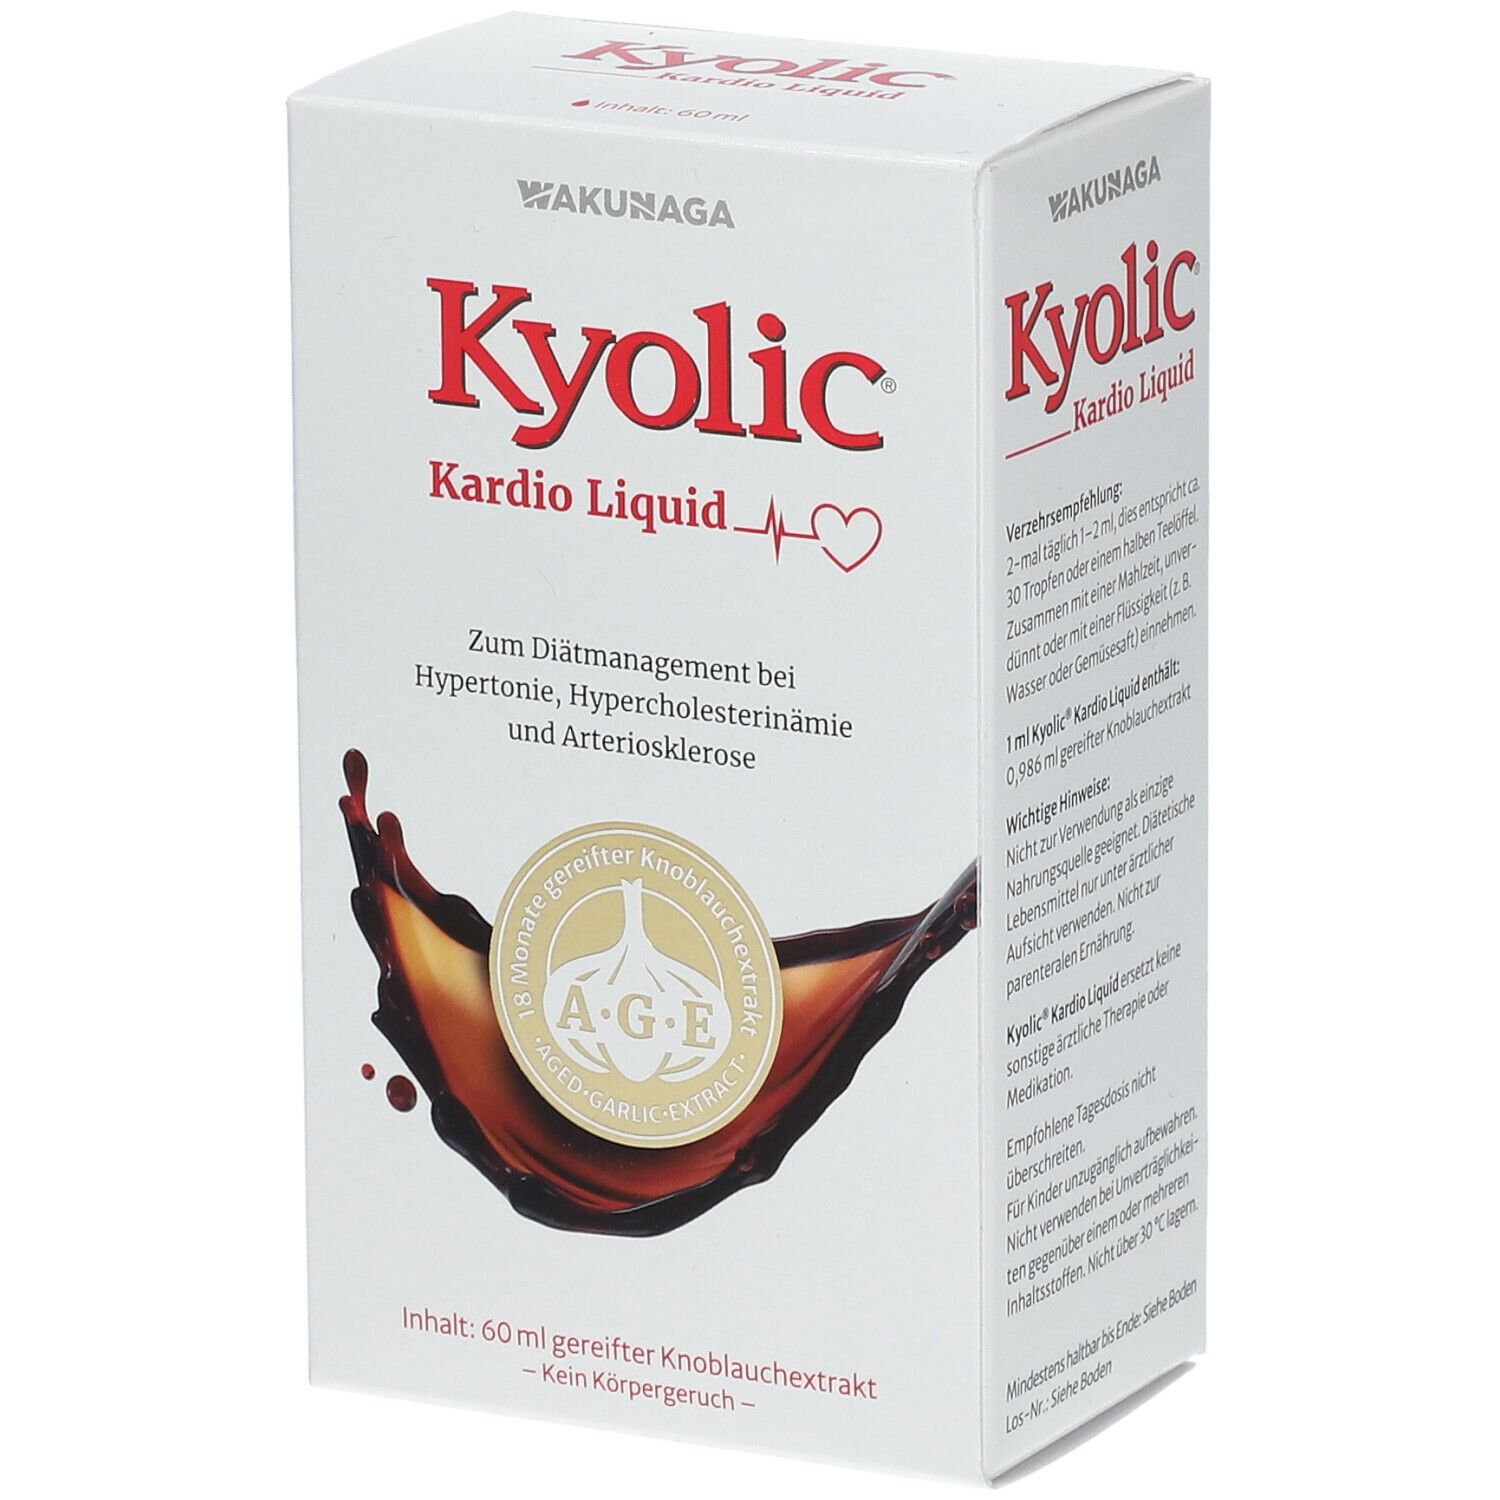  Kyolic® Kardio Liquid